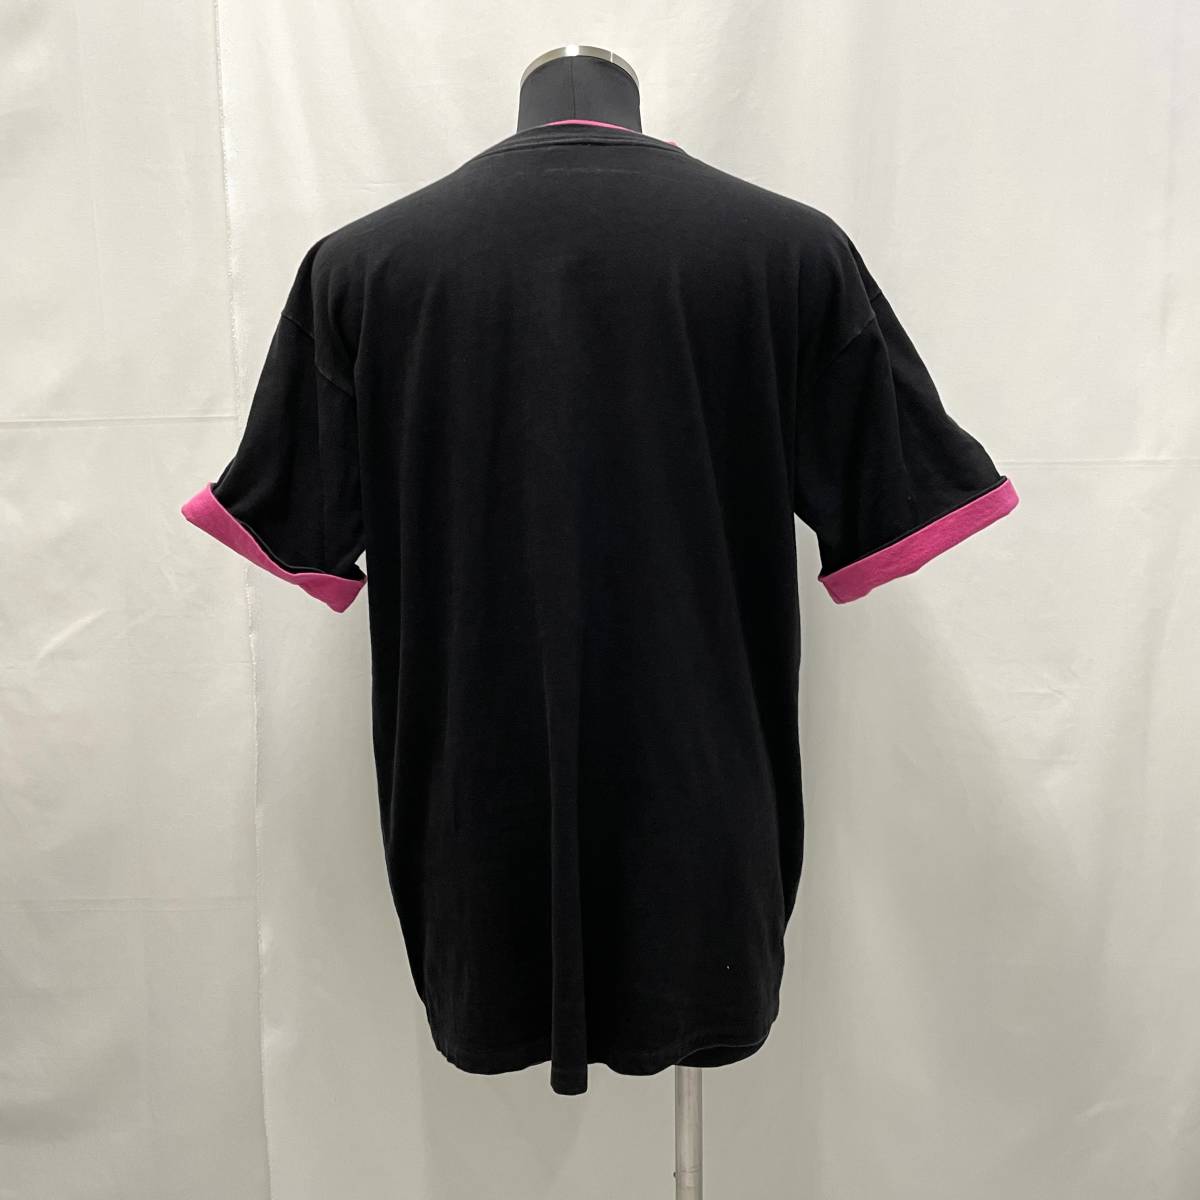 USA古着 90s ONEITA ダブルネック Tシャツ アメリカ製 XLサイズ / 黒 ピンク 袖ダブル レイヤード プリント ヴィンテージ オールド 90年代_画像4